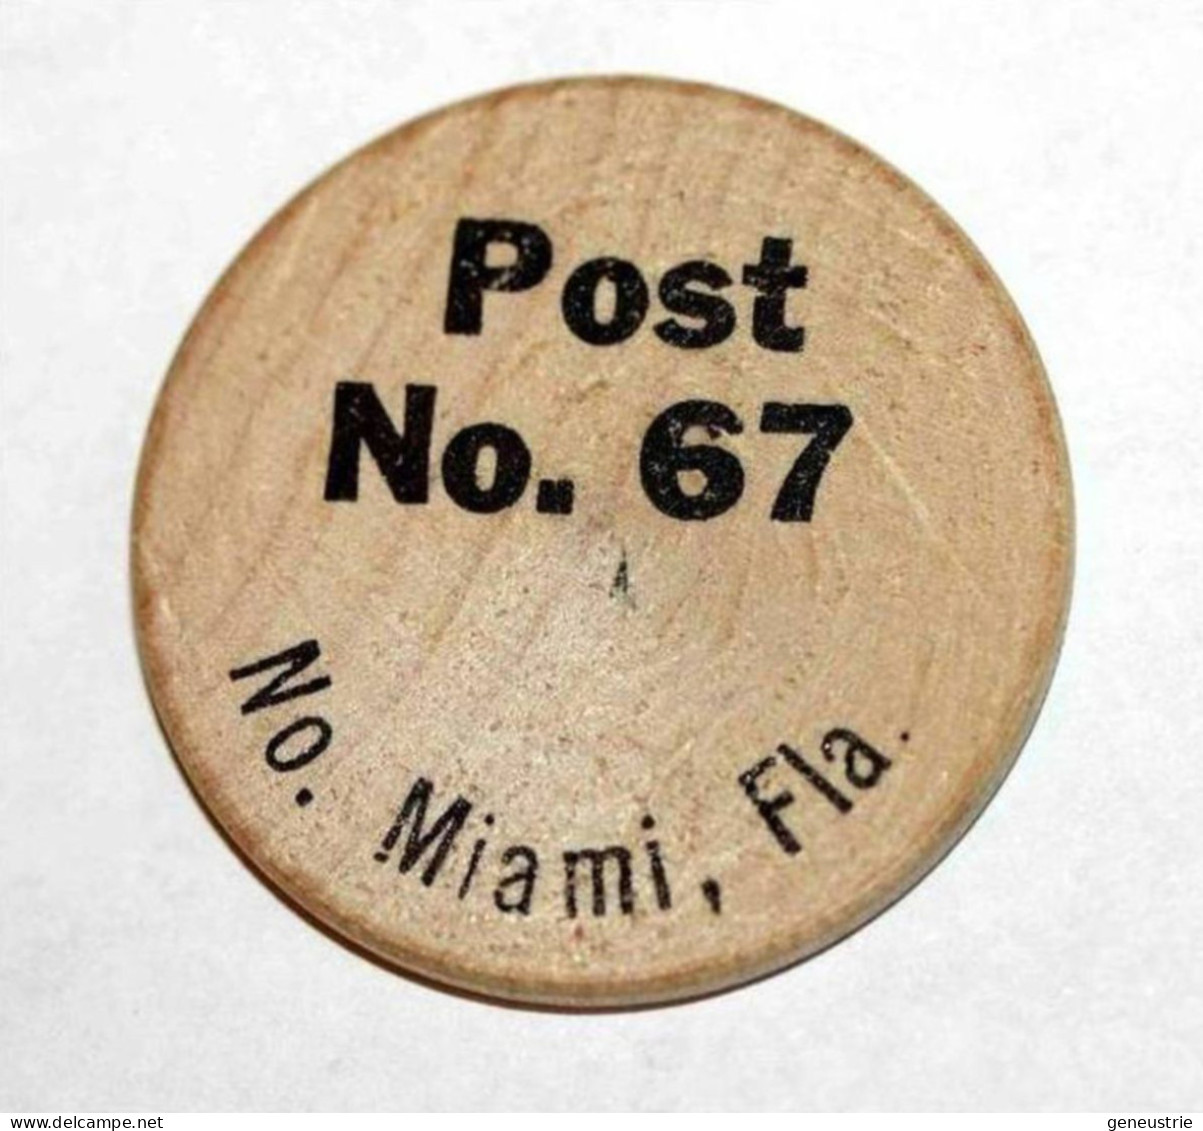 Wooden Token - Wooden Nickel - Jeton Bois Bison Monnaie Nécessité - Miami Floride - Etats-Unis - Monedas/ De Necesidad